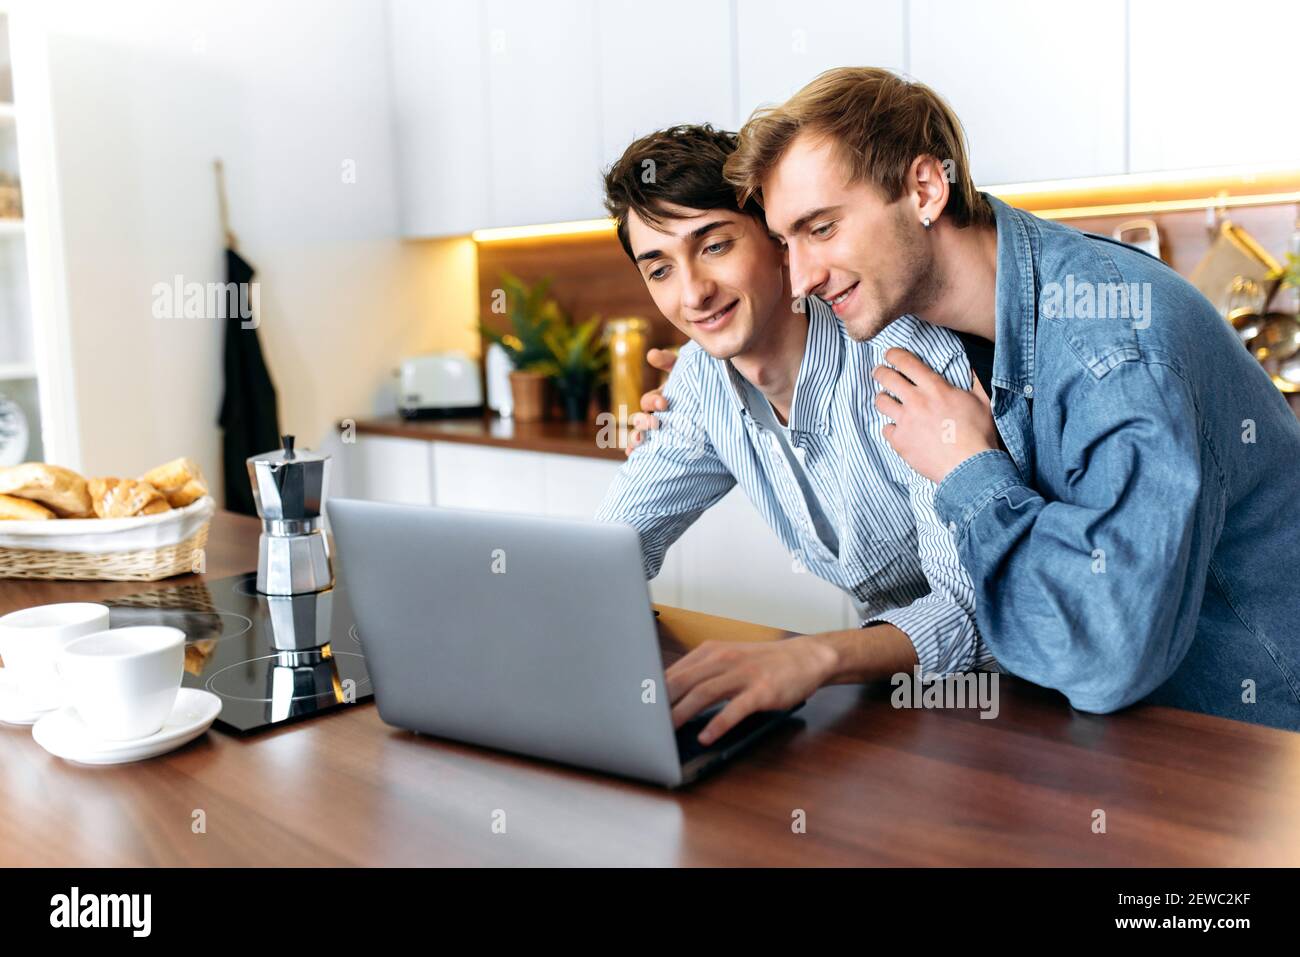 Deux homosexuels heureux. Gay couple debout dans la cuisine, utiliser un ordinateur portable, naviguer sur Internet, regarder un film, faire du shopping en ligne, passez du temps ensemble Banque D'Images